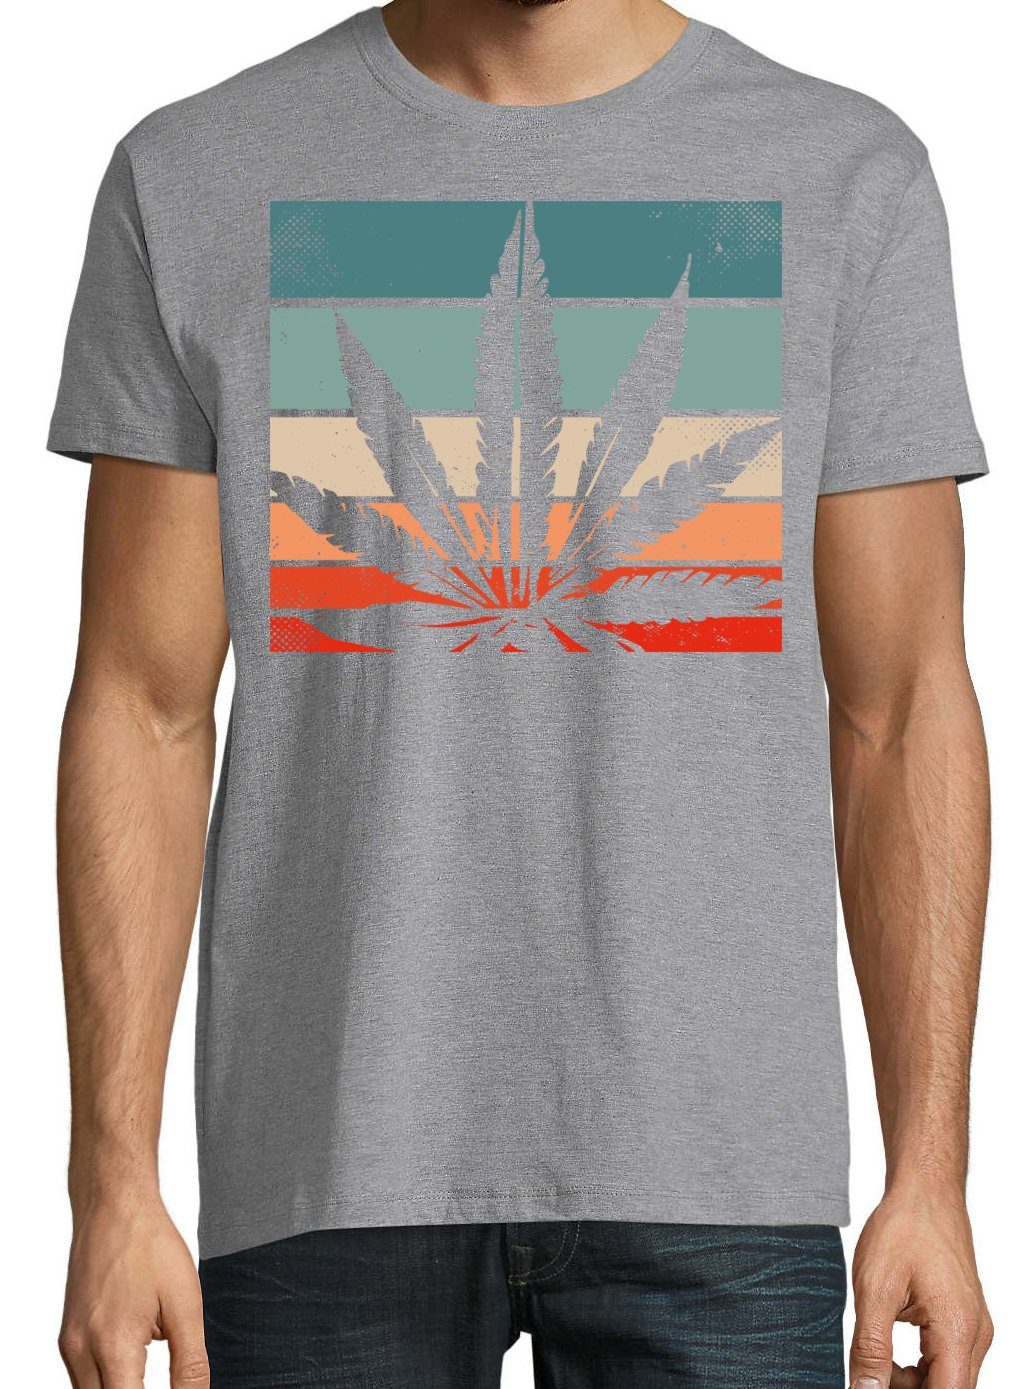 Youth Herren Frontdruck Retro T-Shirt Cannabis Designz mit Grau Trendigem T-Shirt